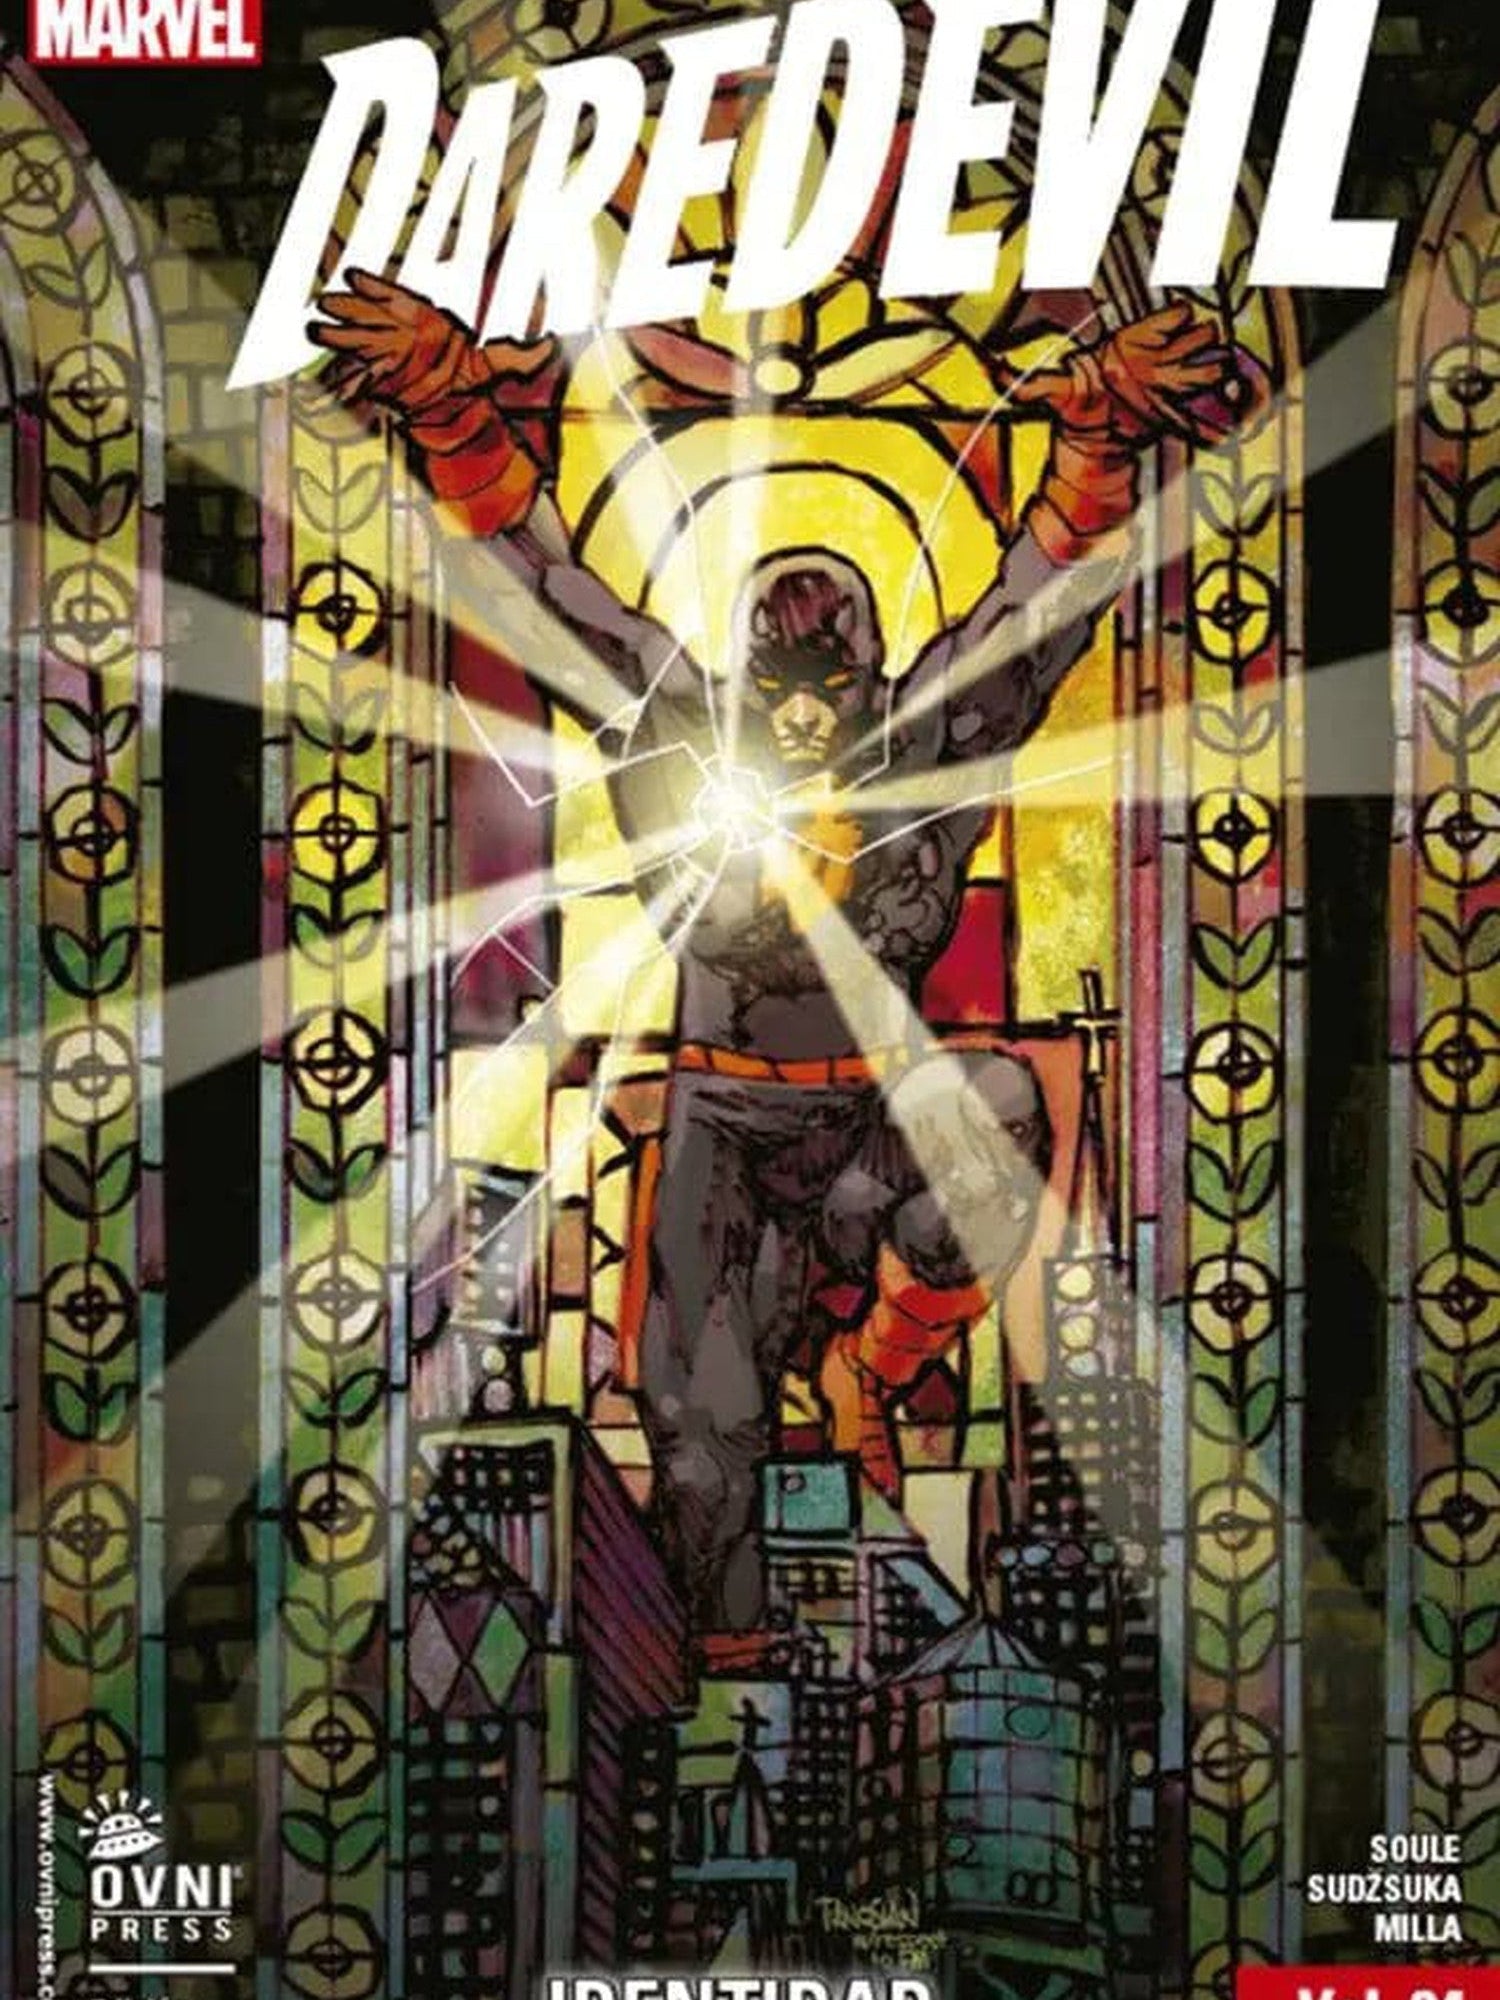 Daredevil Vol. 4: Identidad